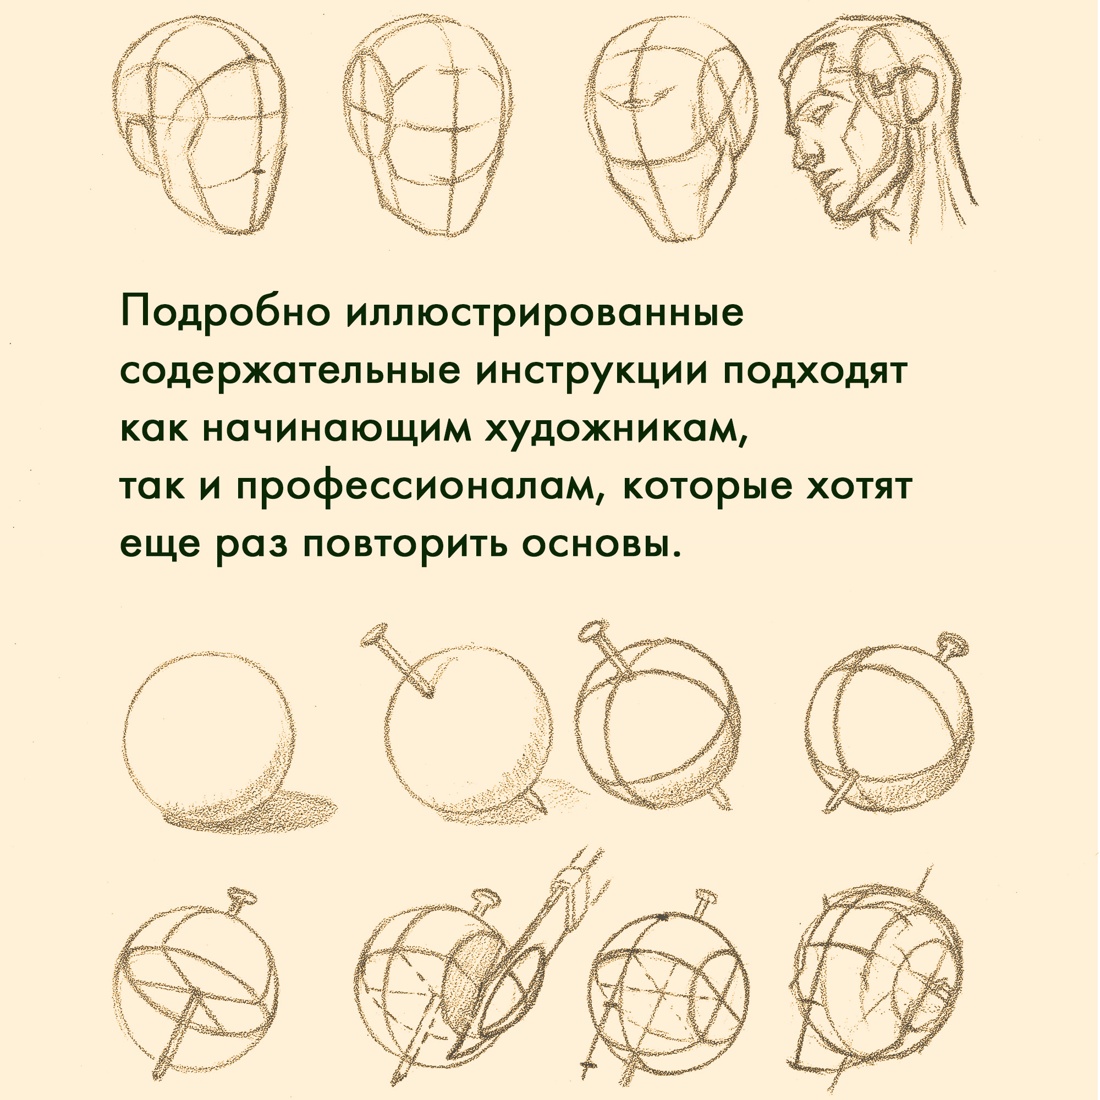 Промо материал к книге "Рисование головы и рук" №2